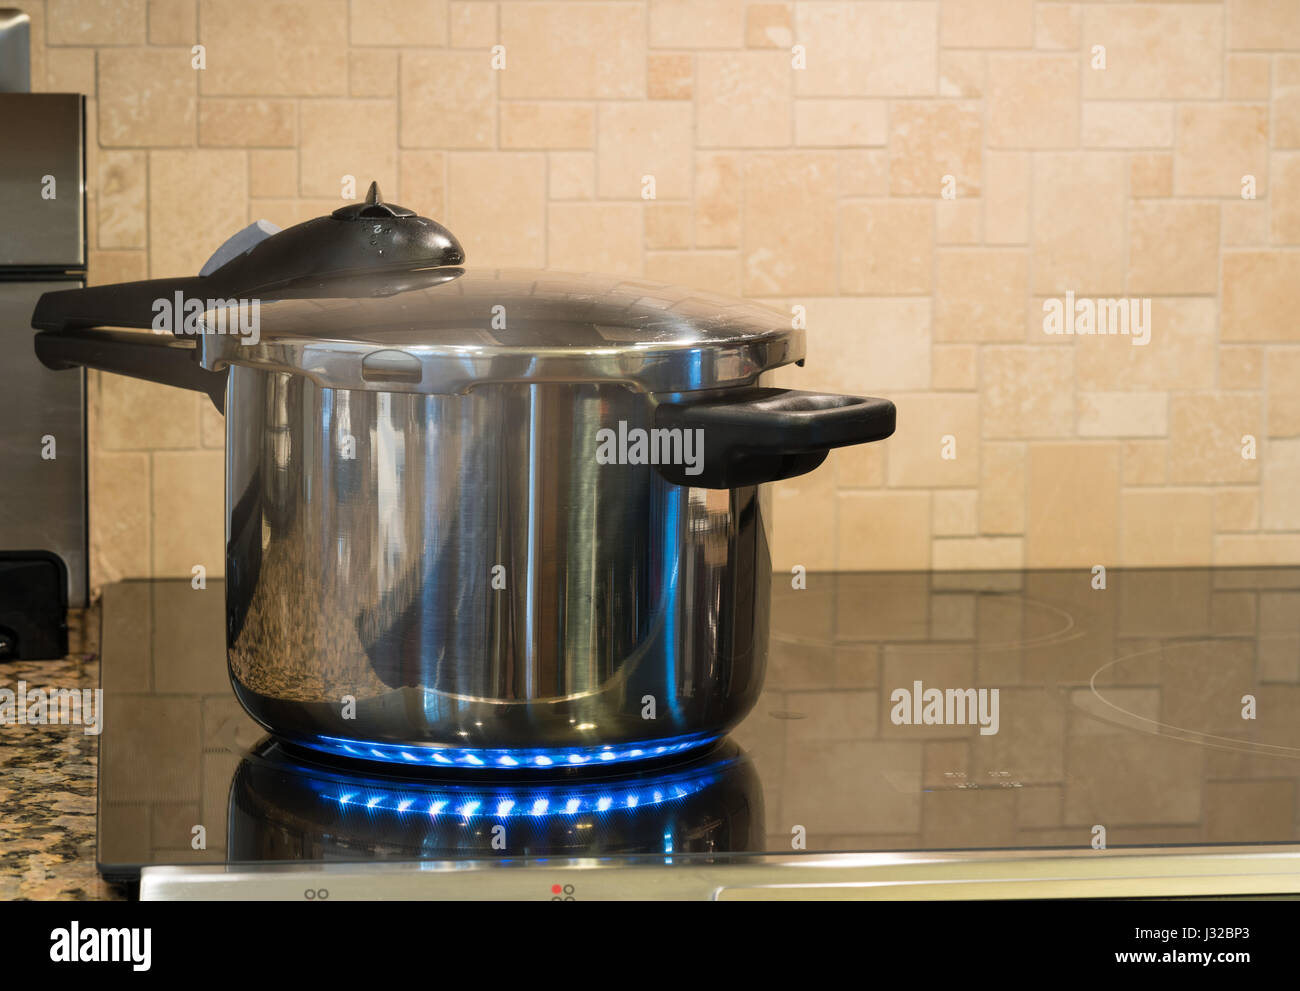 Autocuiseur se défouler sur une plaque de cuisson à induction modernes Banque D'Images